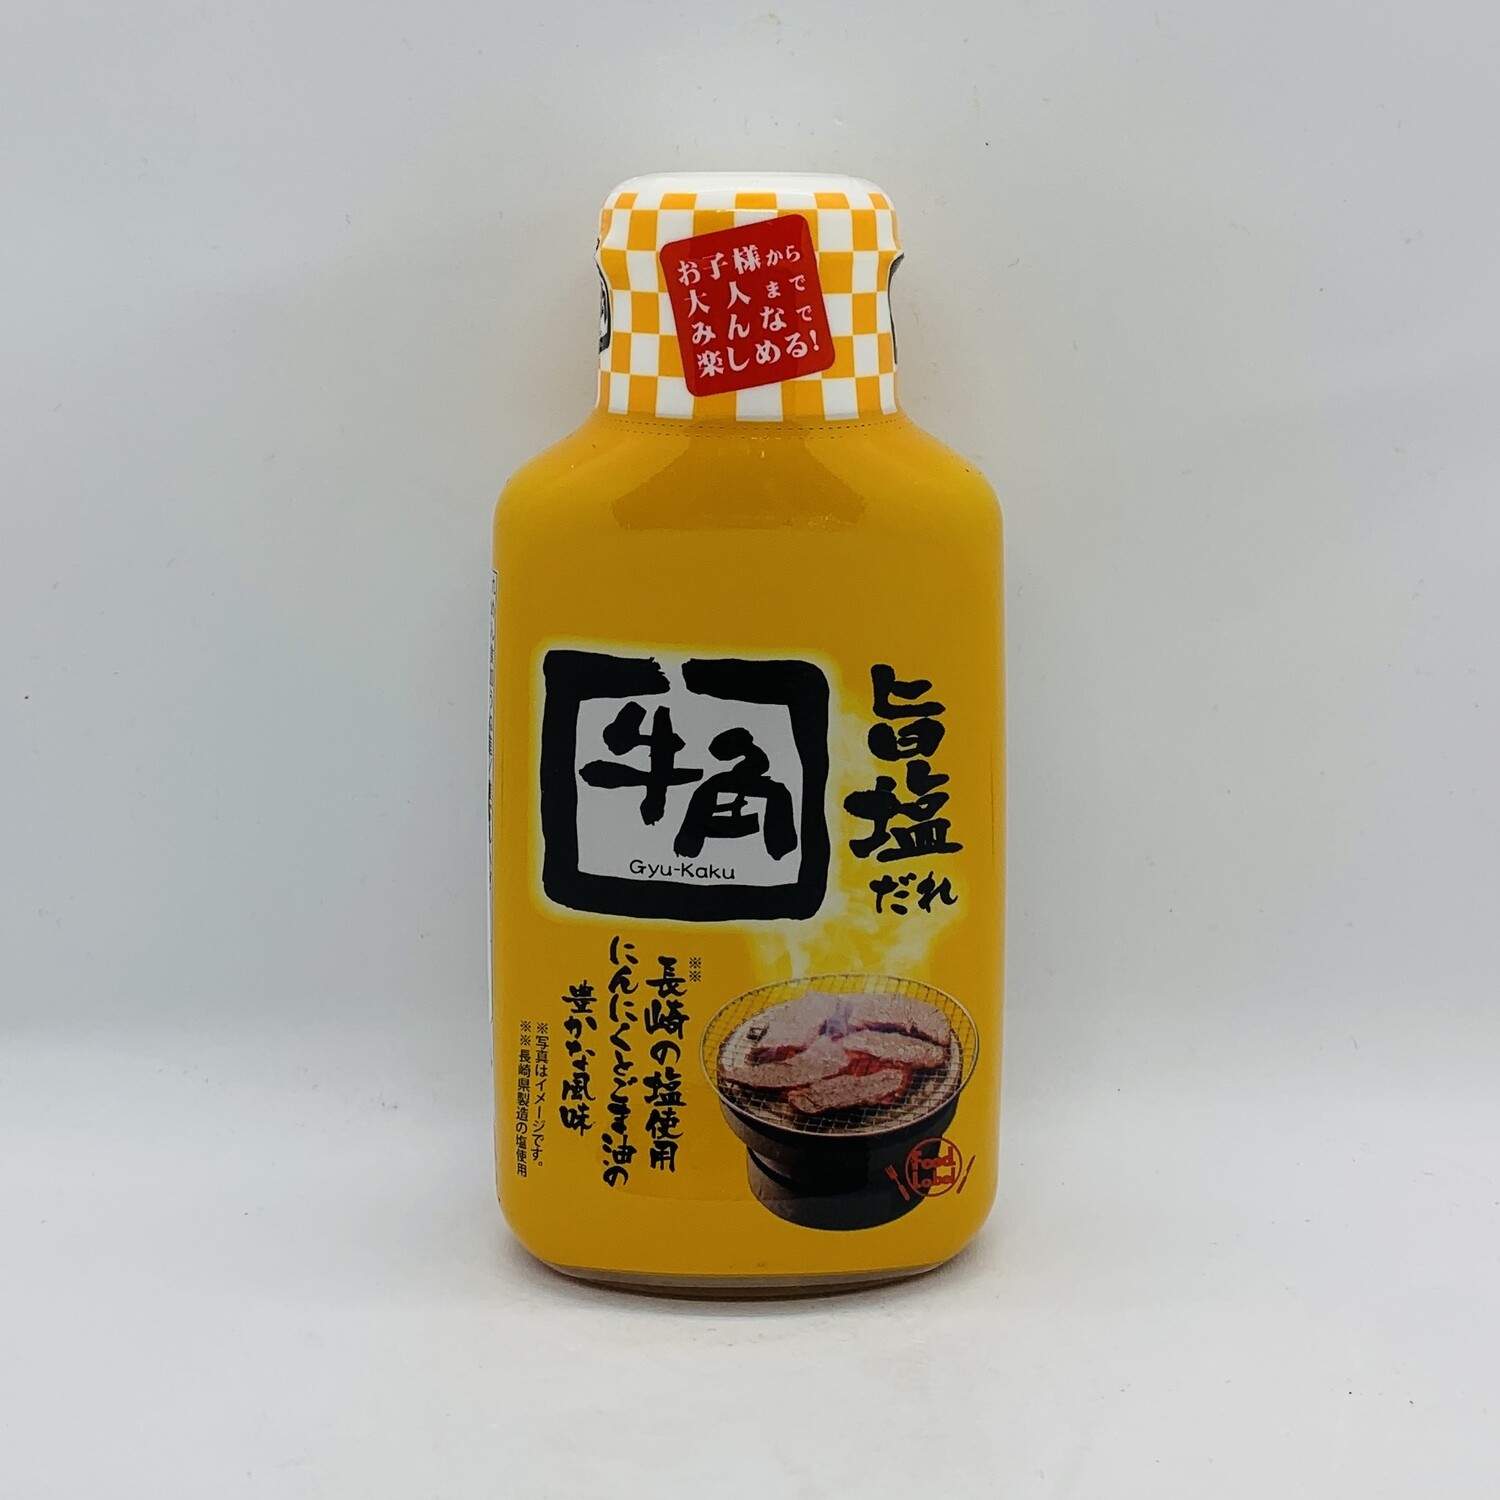 GYUKAKU BBQ Sauce Shio